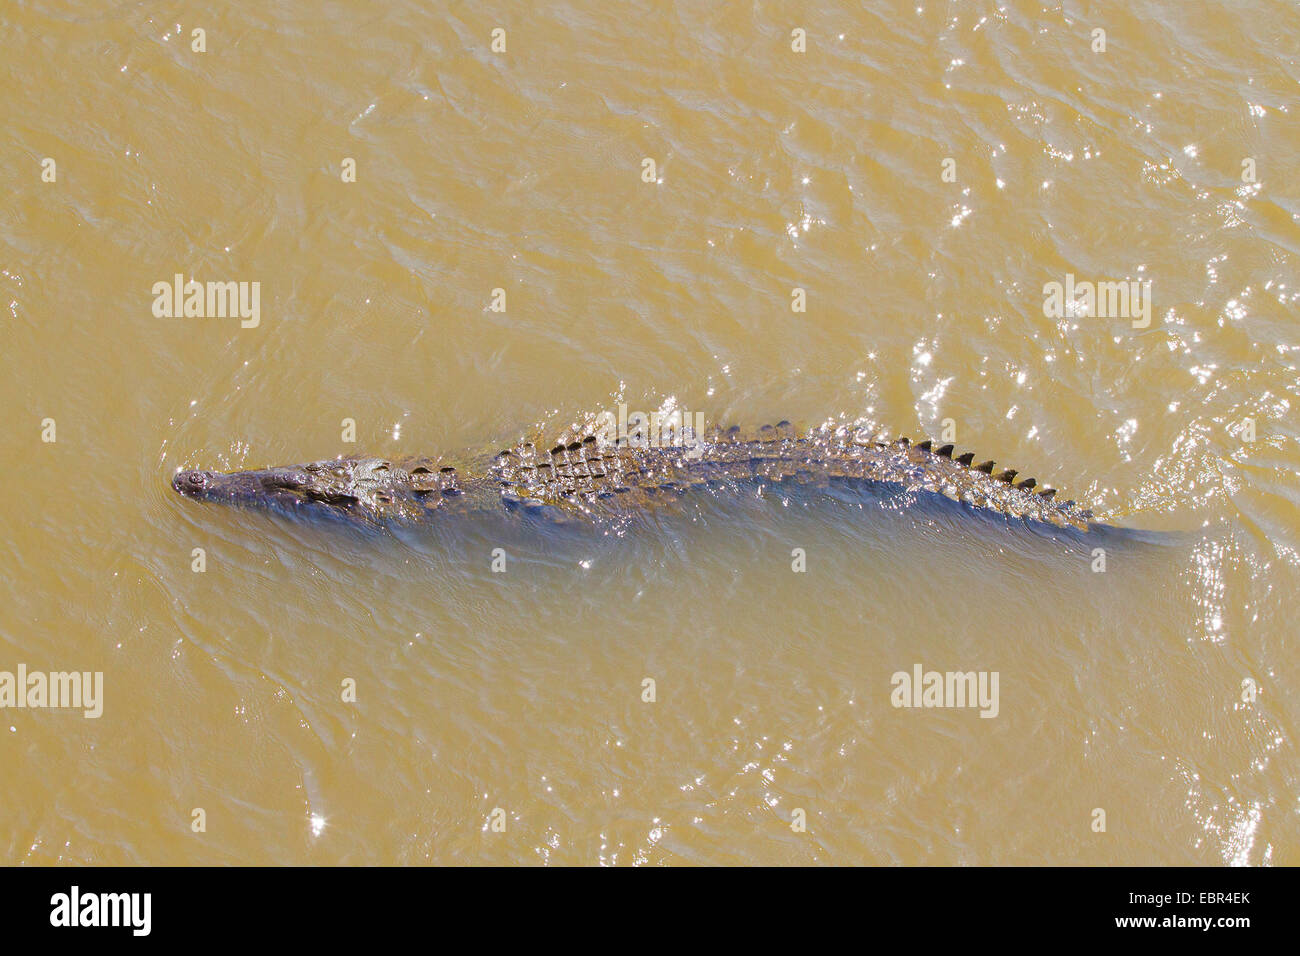 American crocodile (Crocodylus acutus), swimming, Costa Rica, Rio Tarcoles Stock Photo